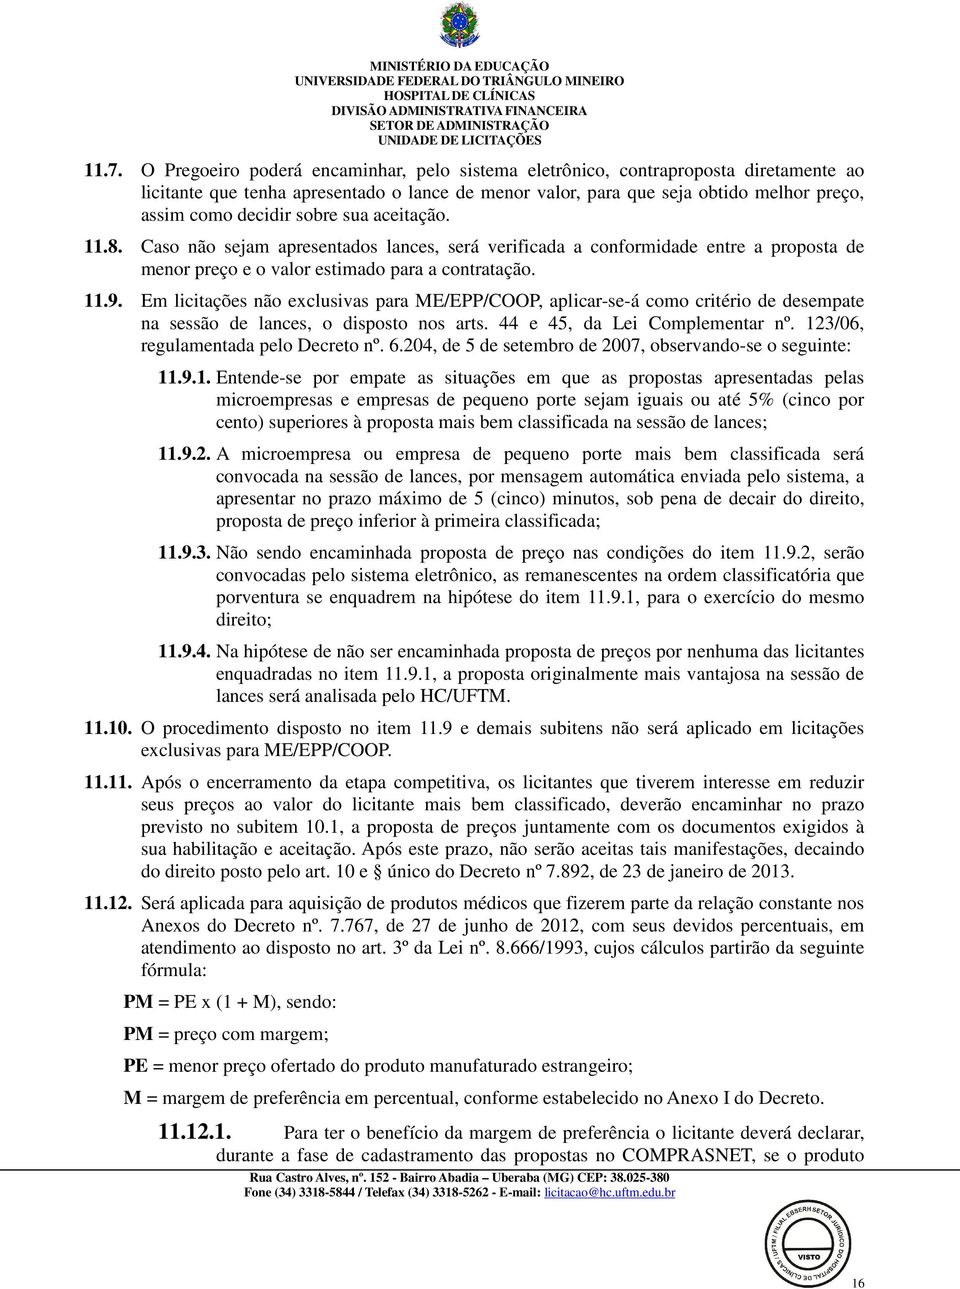 Em licitações não exclusivas para ME/EPP/COOP, aplicar-se-á como critério de desempate na sessão de lances, o disposto nos arts. 44 e 45, da Lei Complementar nº. 123/06, regulamentada pelo Decreto nº.